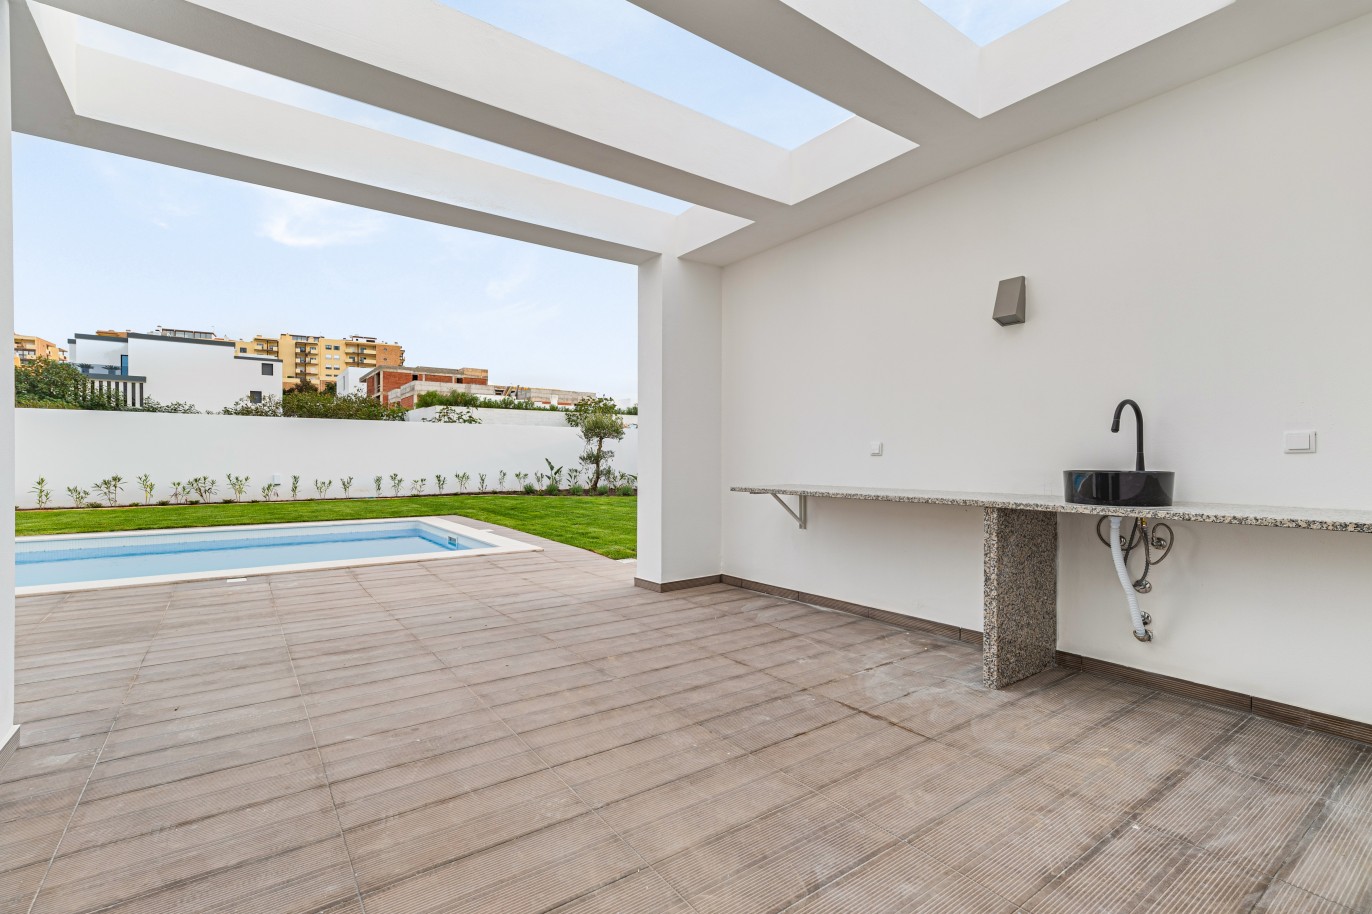 Moradia V4, com piscina, para venda em Porto de Mós, Lagos, Algarve_243632